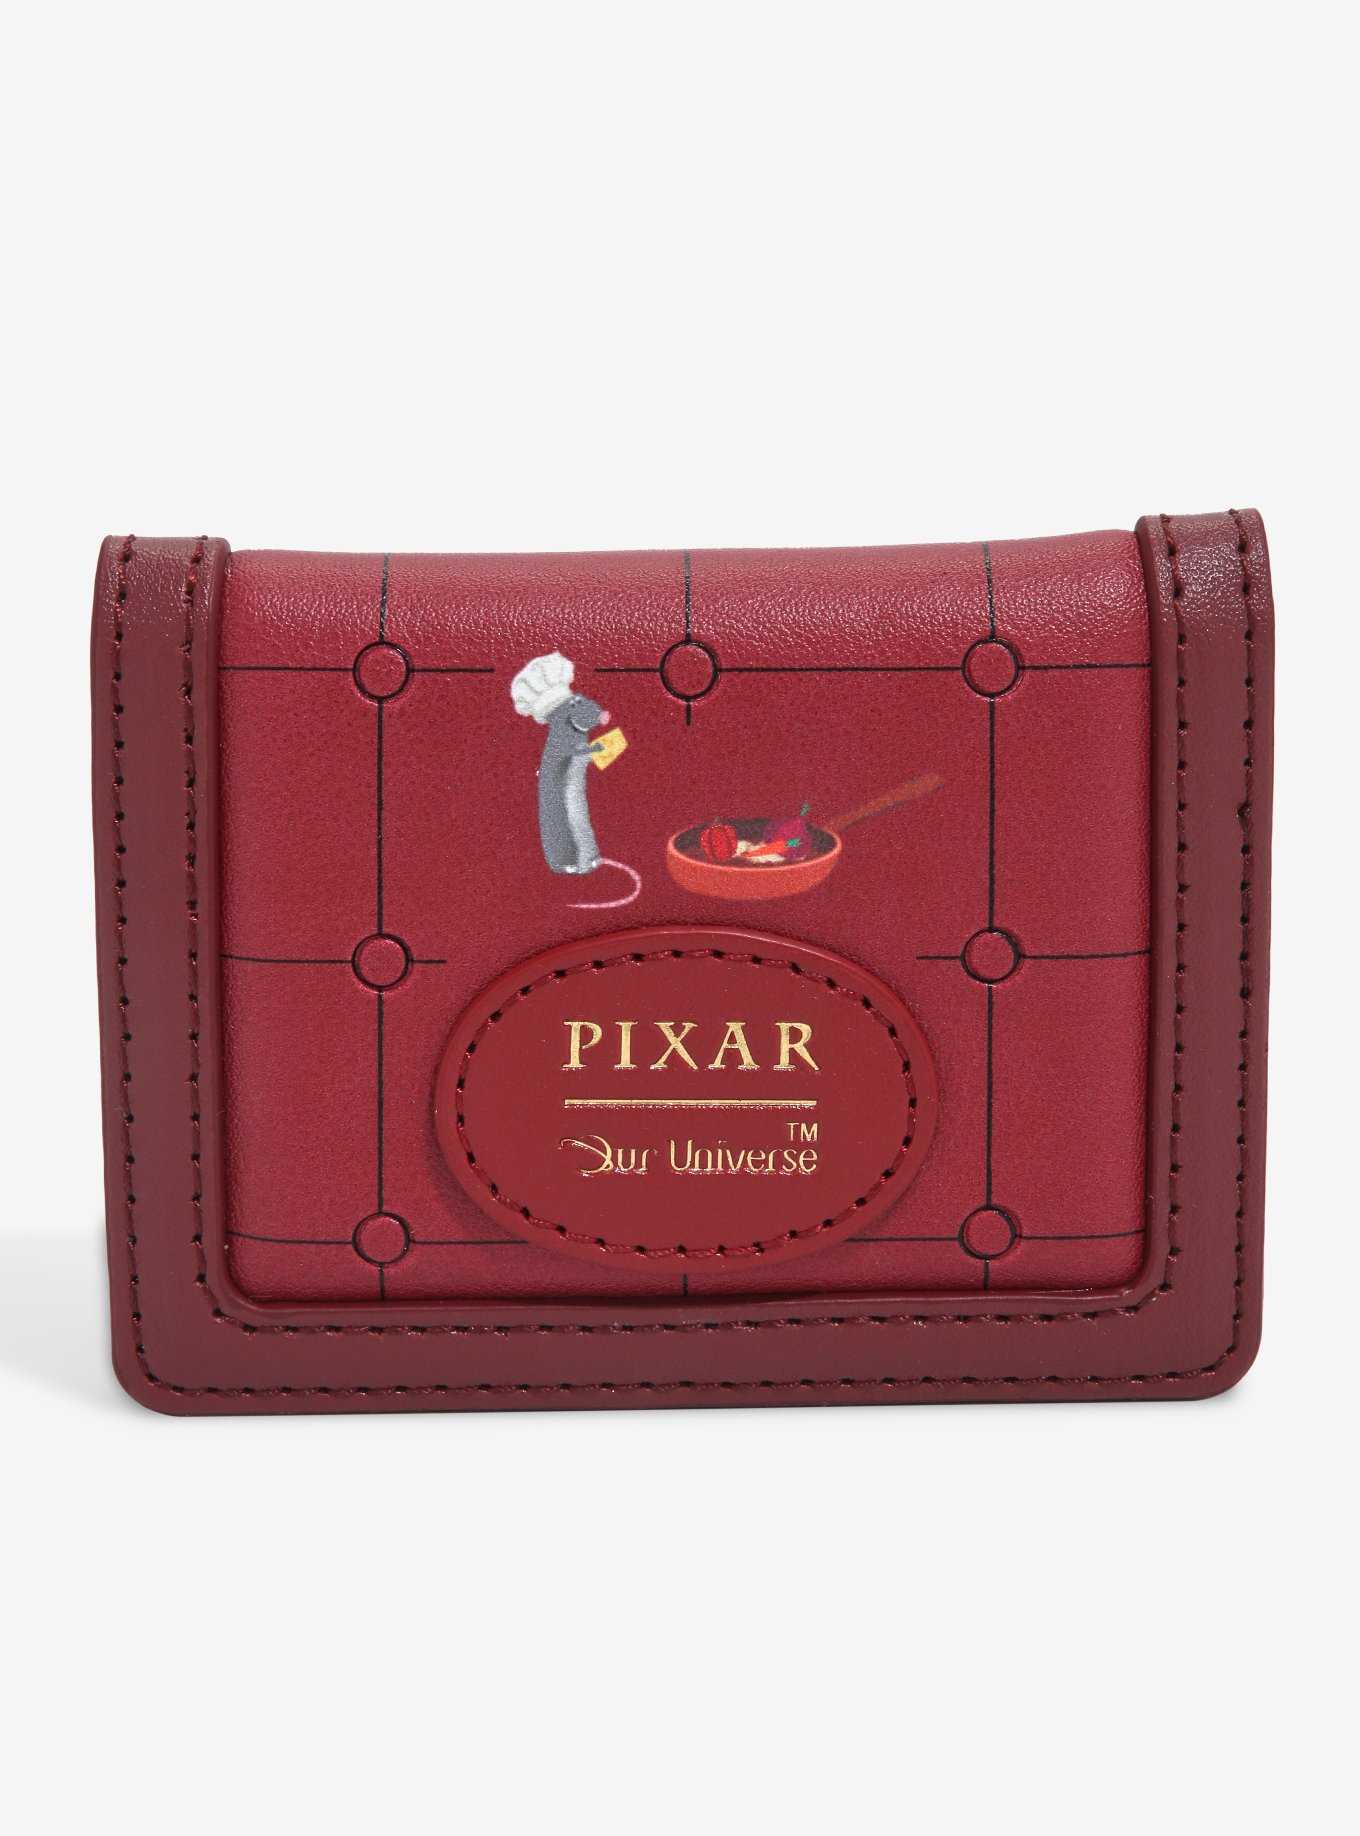 Our Universe Disney Pixar Ratatouille Kitchen Doors Cardholder - BoxLunch Exclusive, , hi-res